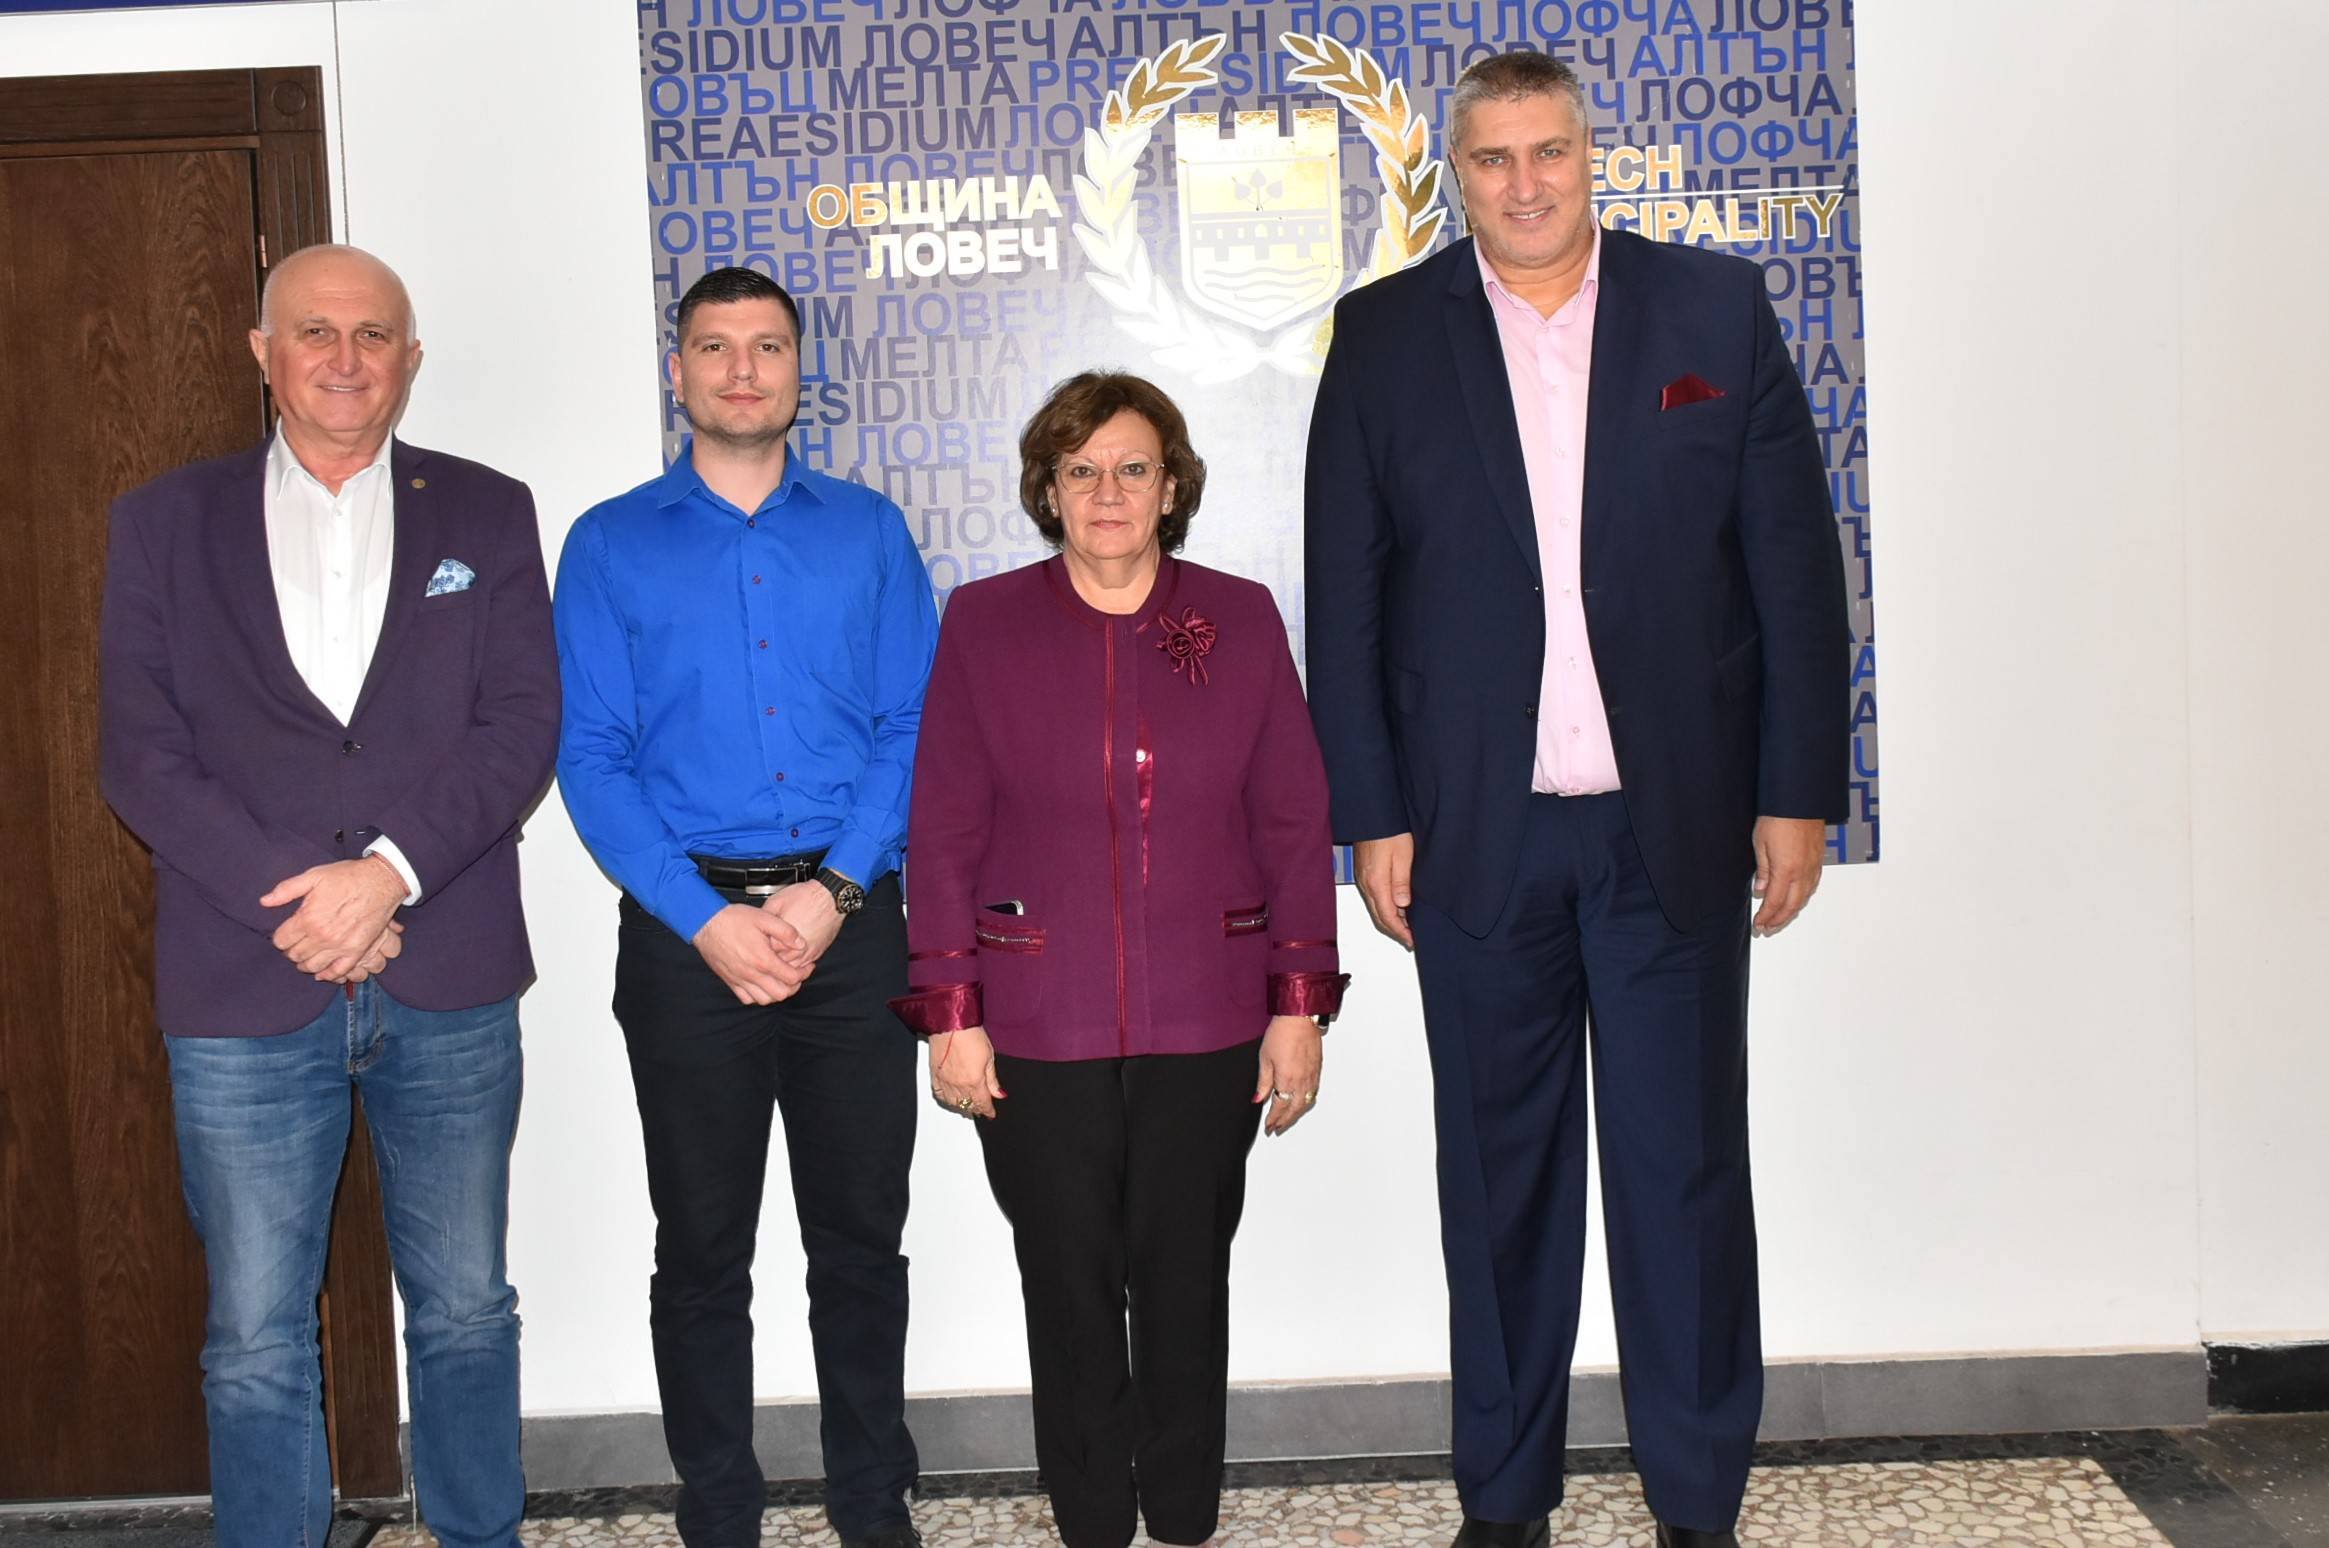 Кметът Корнелия Маринова и президентът на БФВ Любо Ганев разширяват хоризонта пред волейбола в Ловеч